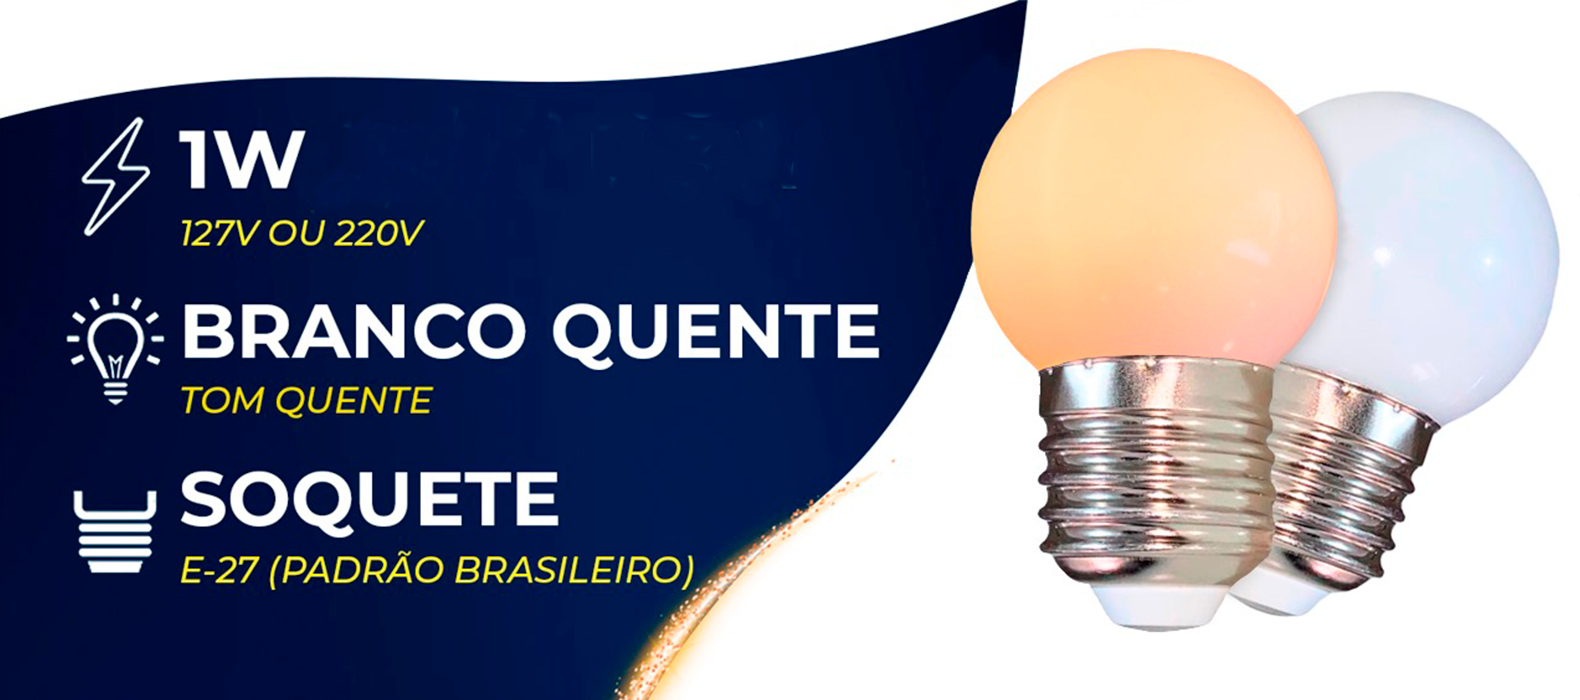 Lampada de led 1w, Branco quente, soquete:E-27 padrão brasileiro